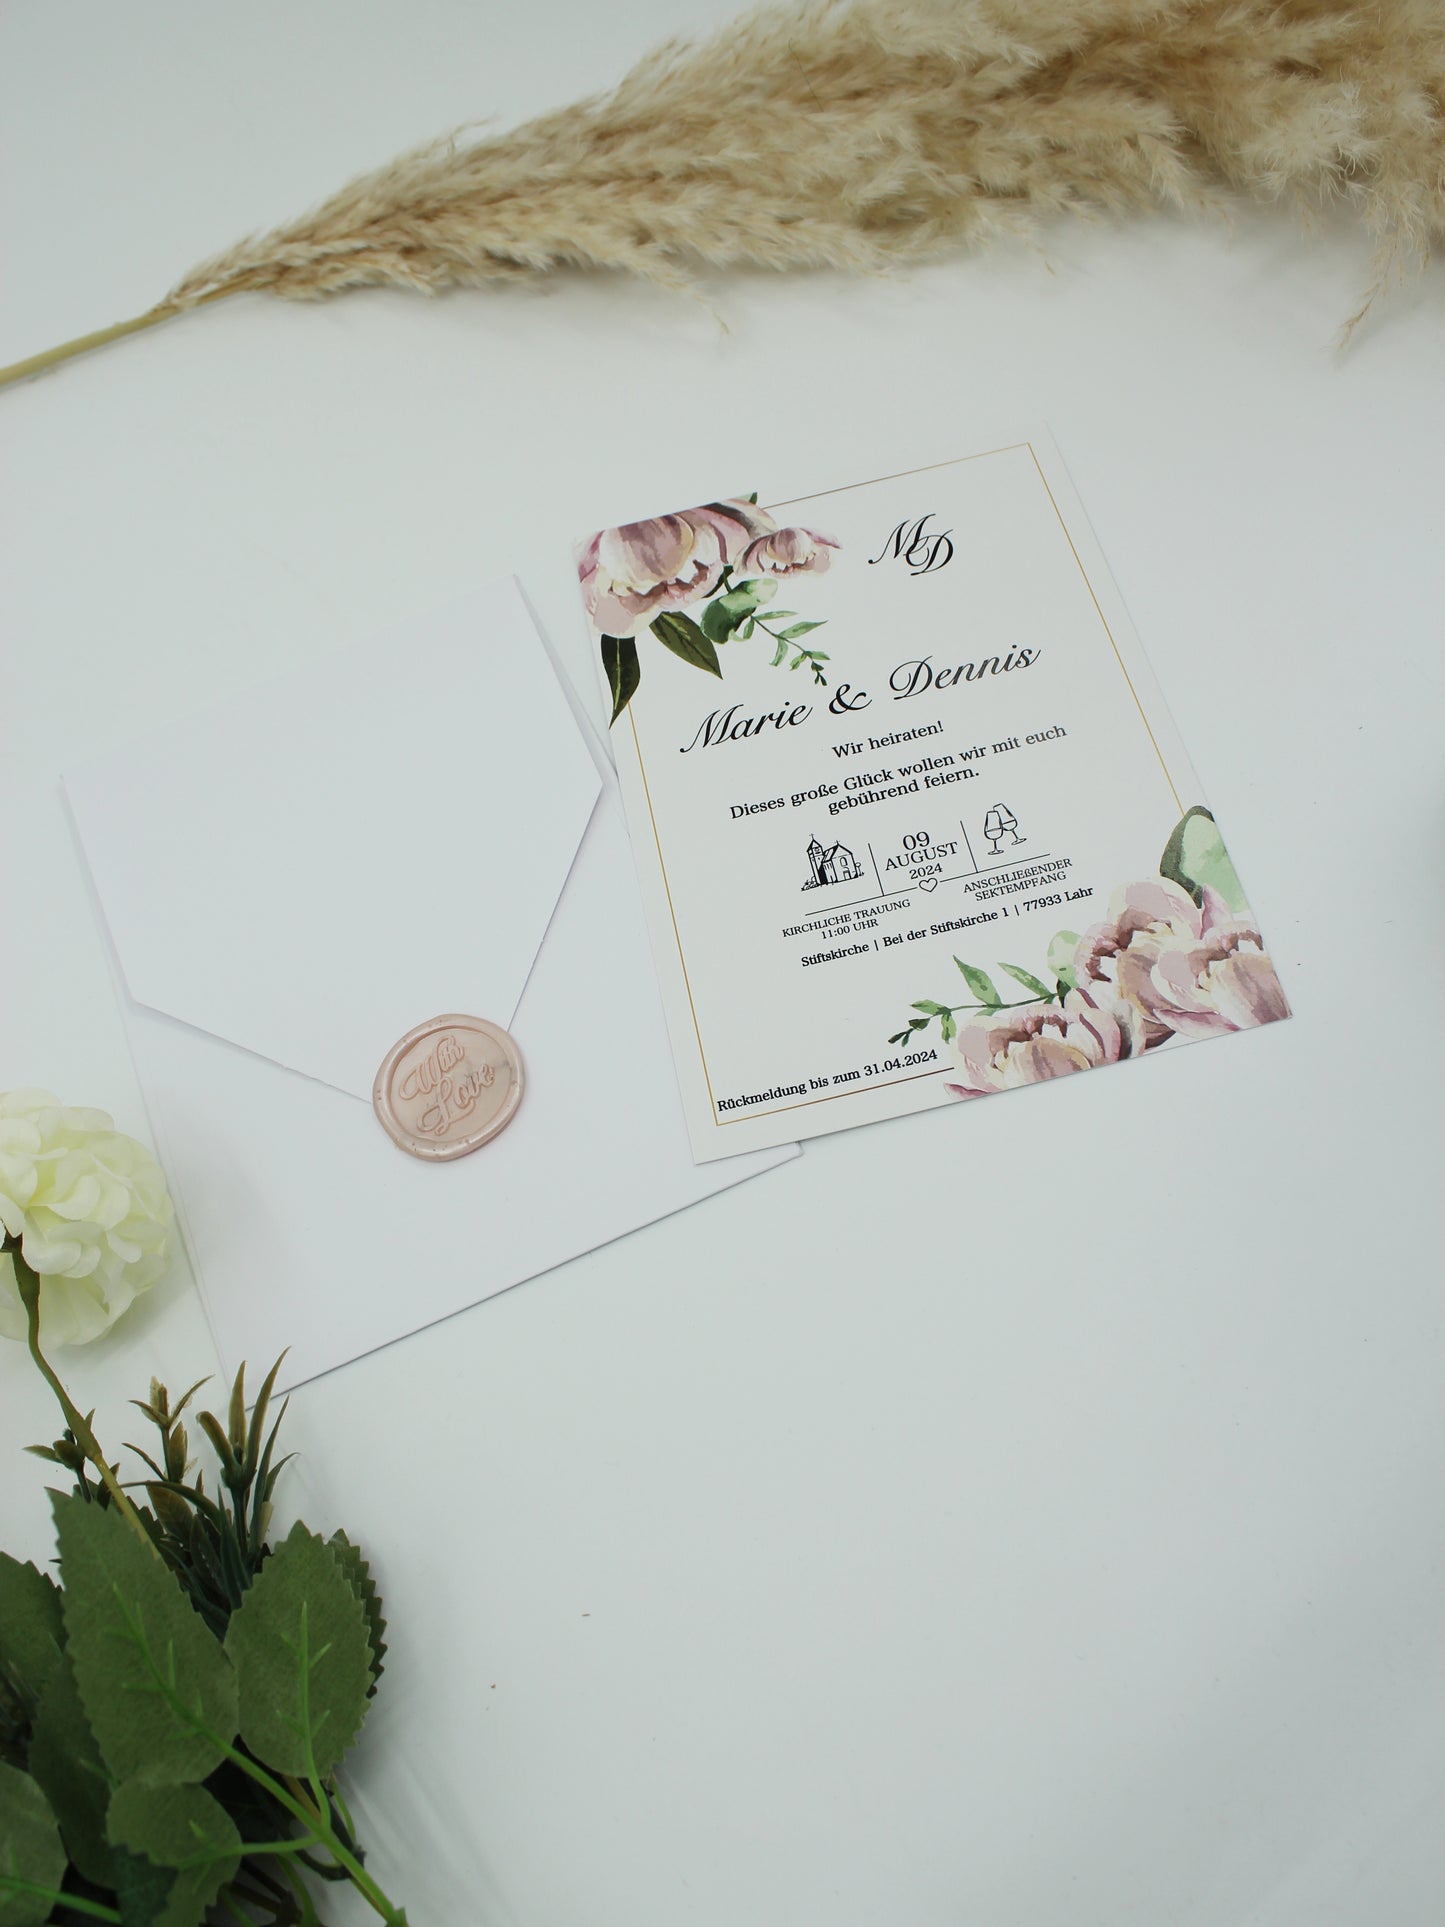 Code: 5015 - Handgemachte Hochzeitseinladung